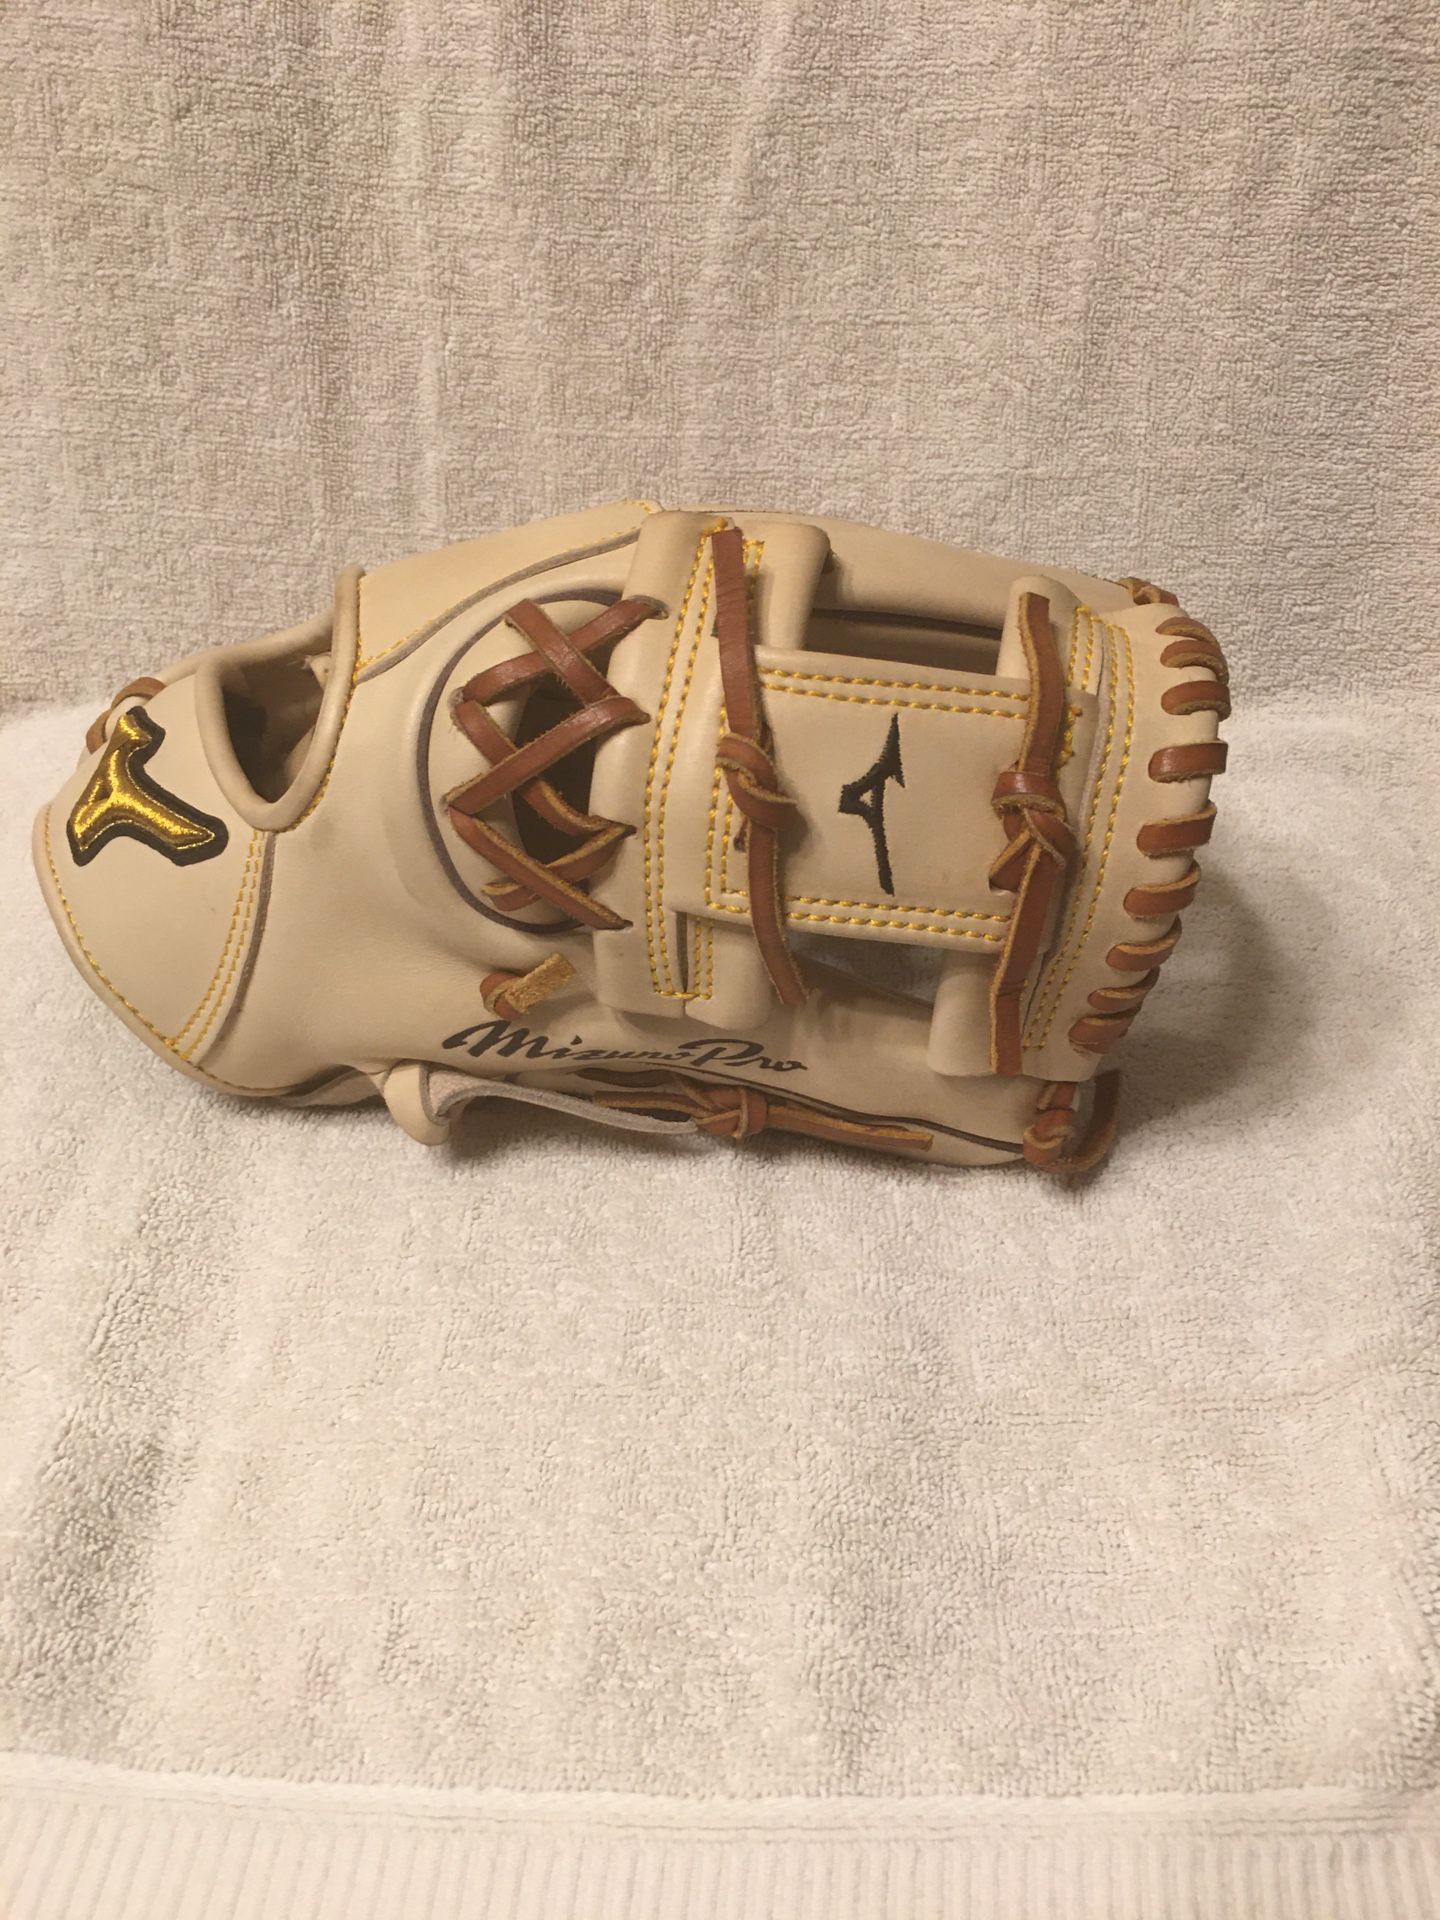 New Mizuno Pro baseball Softball Glove